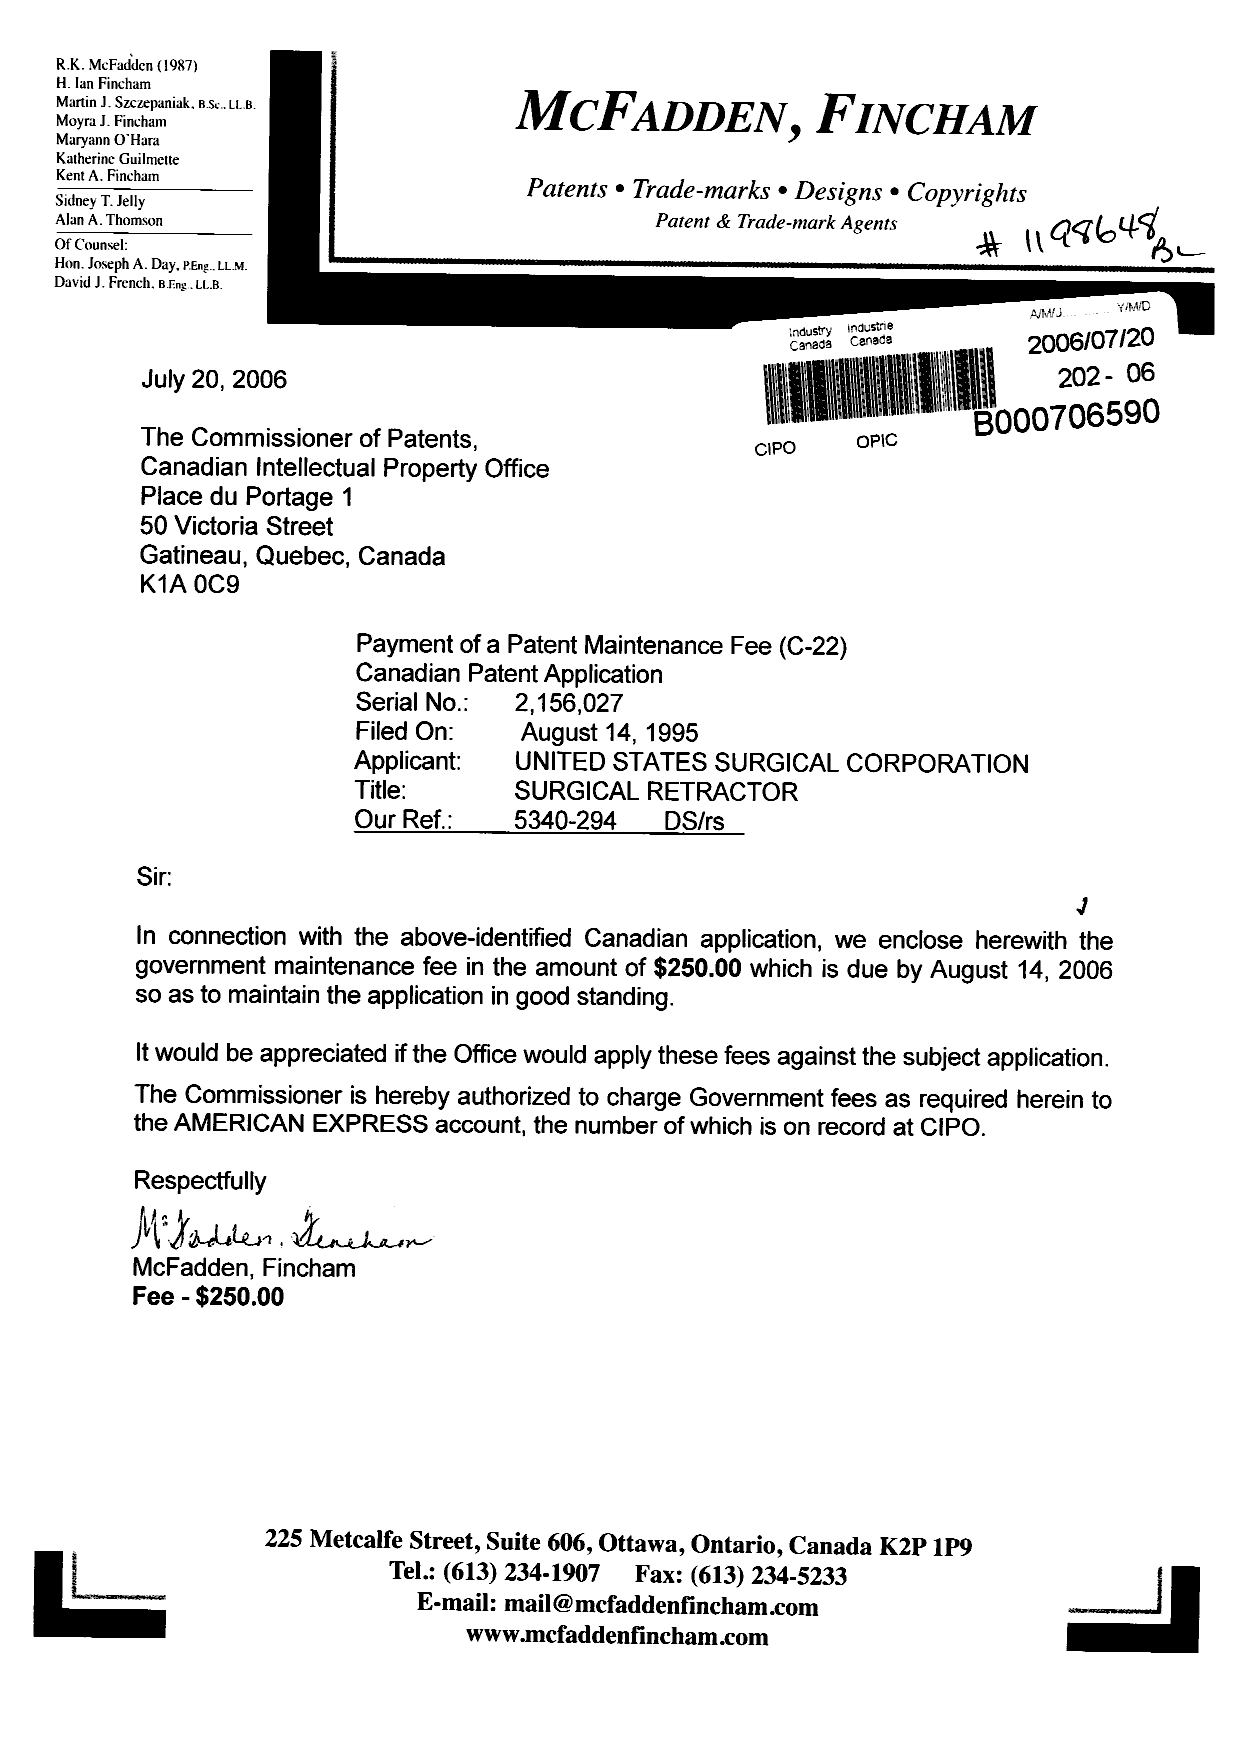 Document de brevet canadien 2156027. Taxes 20060720. Image 1 de 1